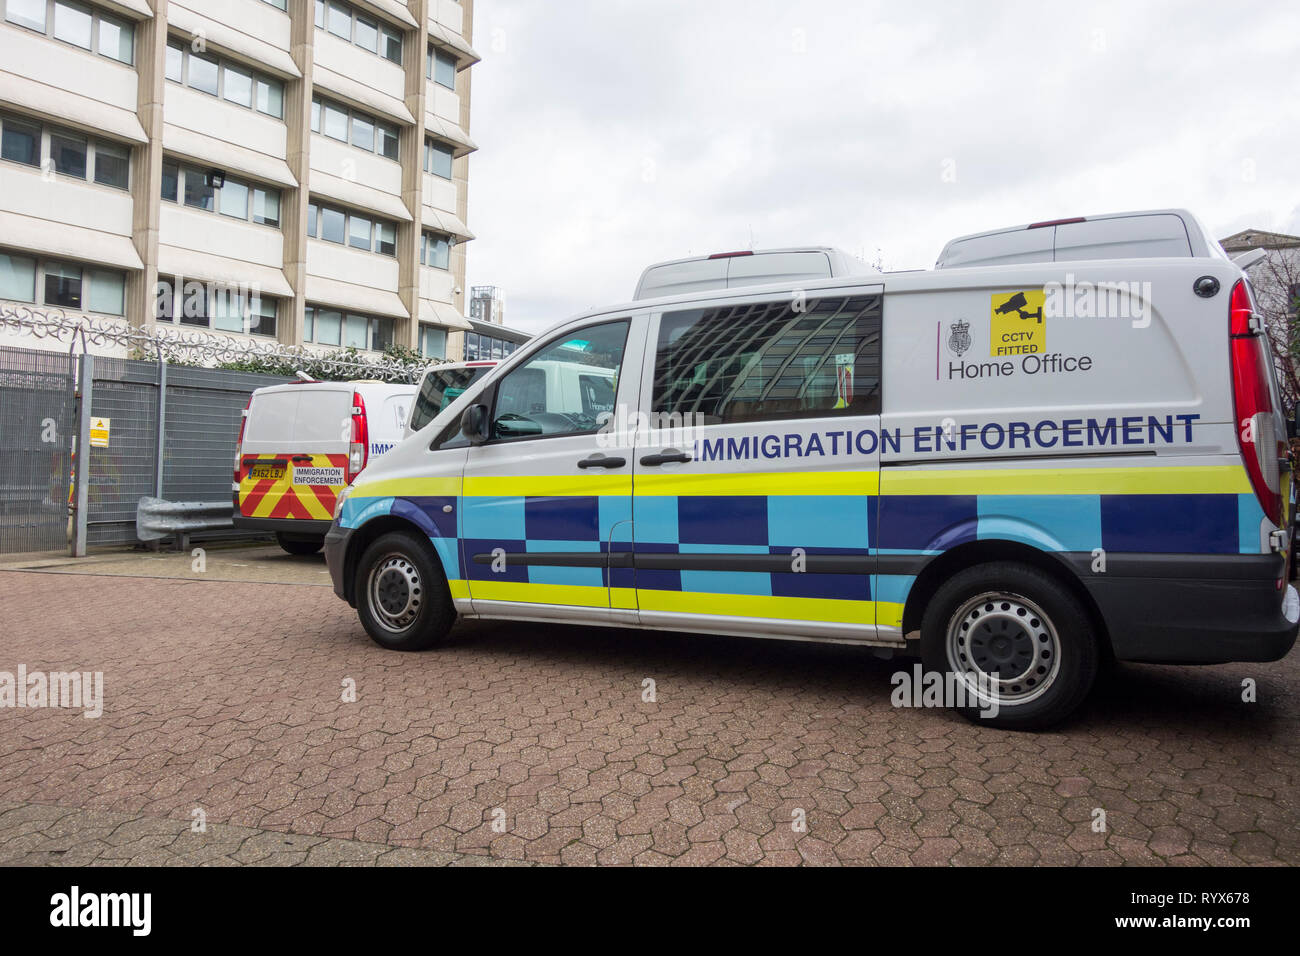 Oficina en casa La furgoneta de la policía de inmigración aparcada fuera de un edificio en Londres, Inglaterra, Reino Unido Foto de stock